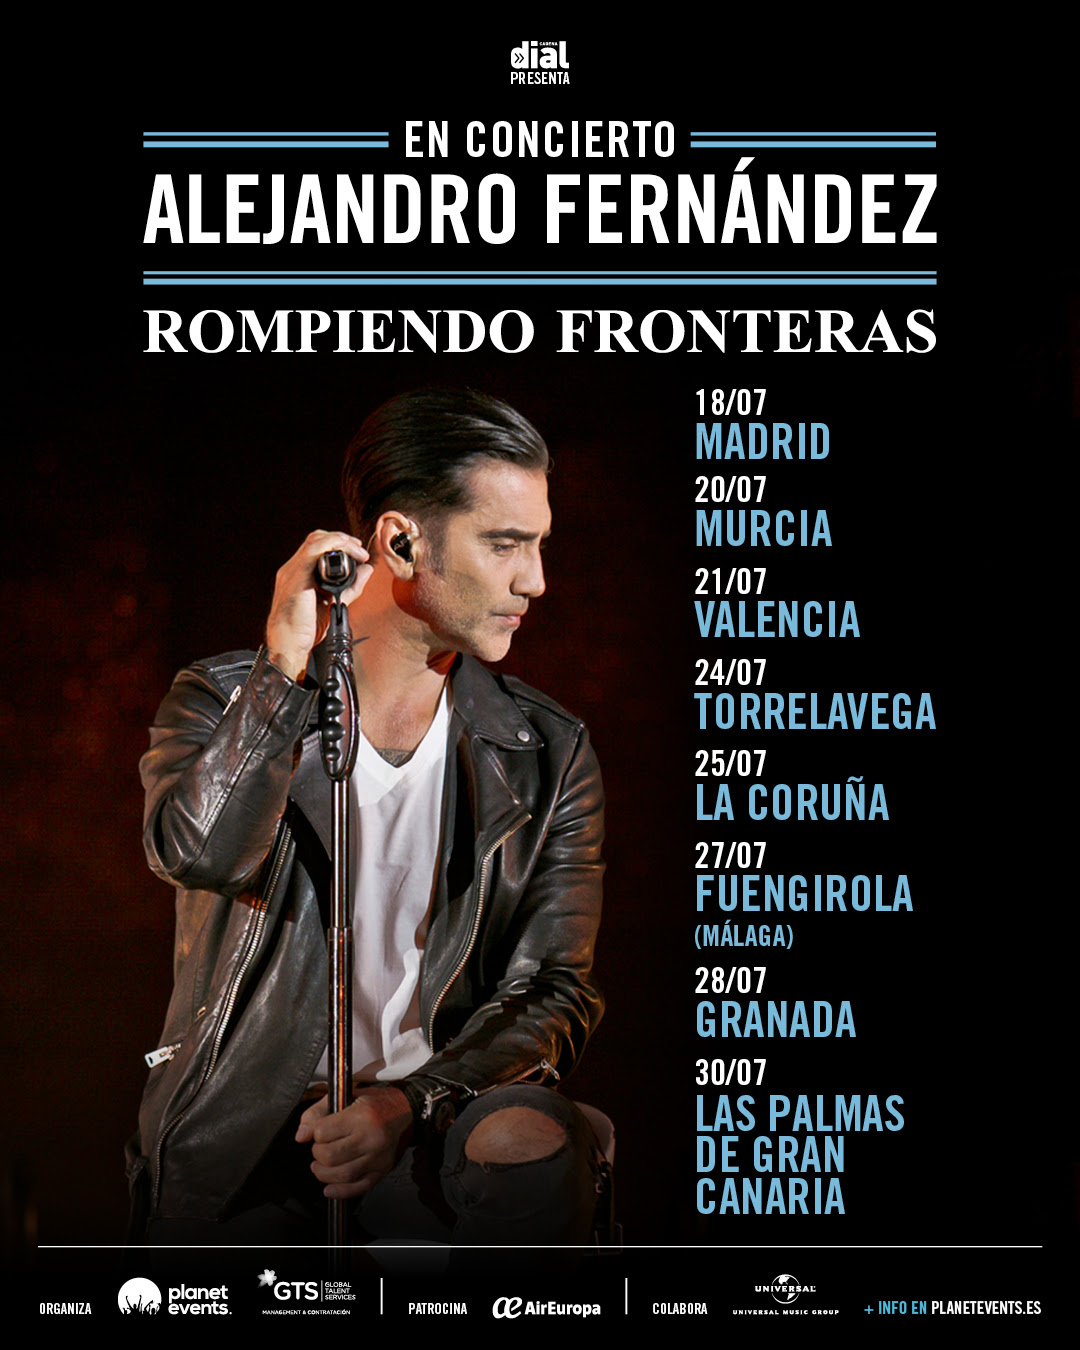 Alejandro Fernández comienza su gira española de 8 conciertos este miércoles en Madrid